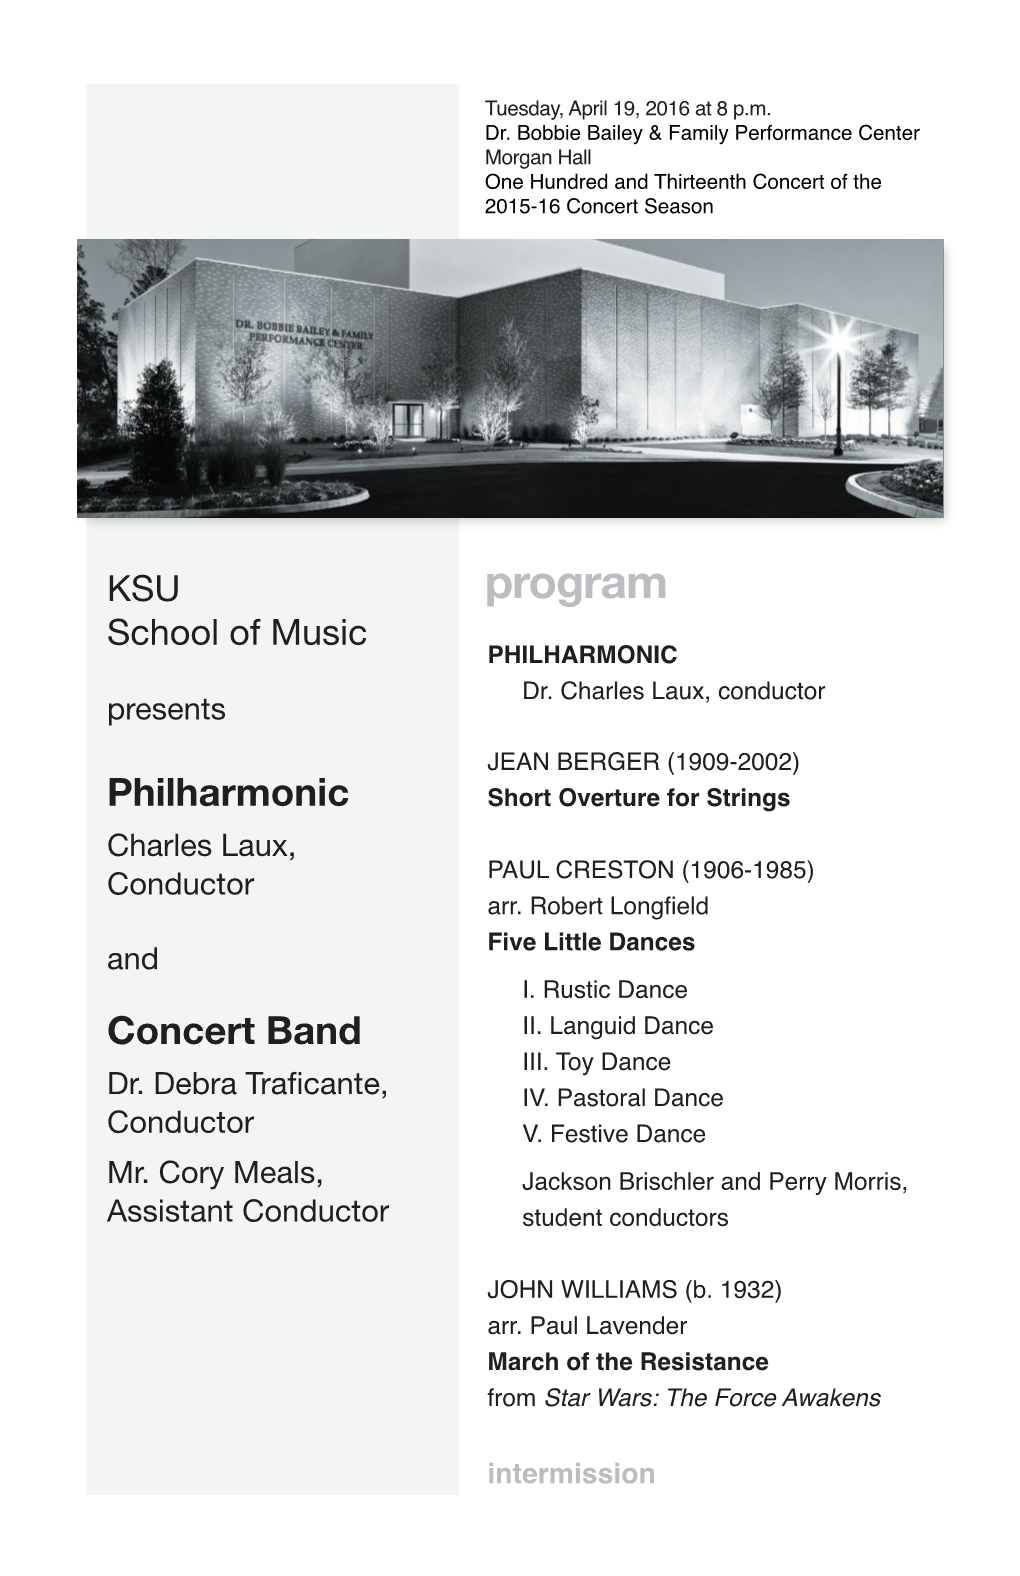 KSU Philharmonic and Concert Band